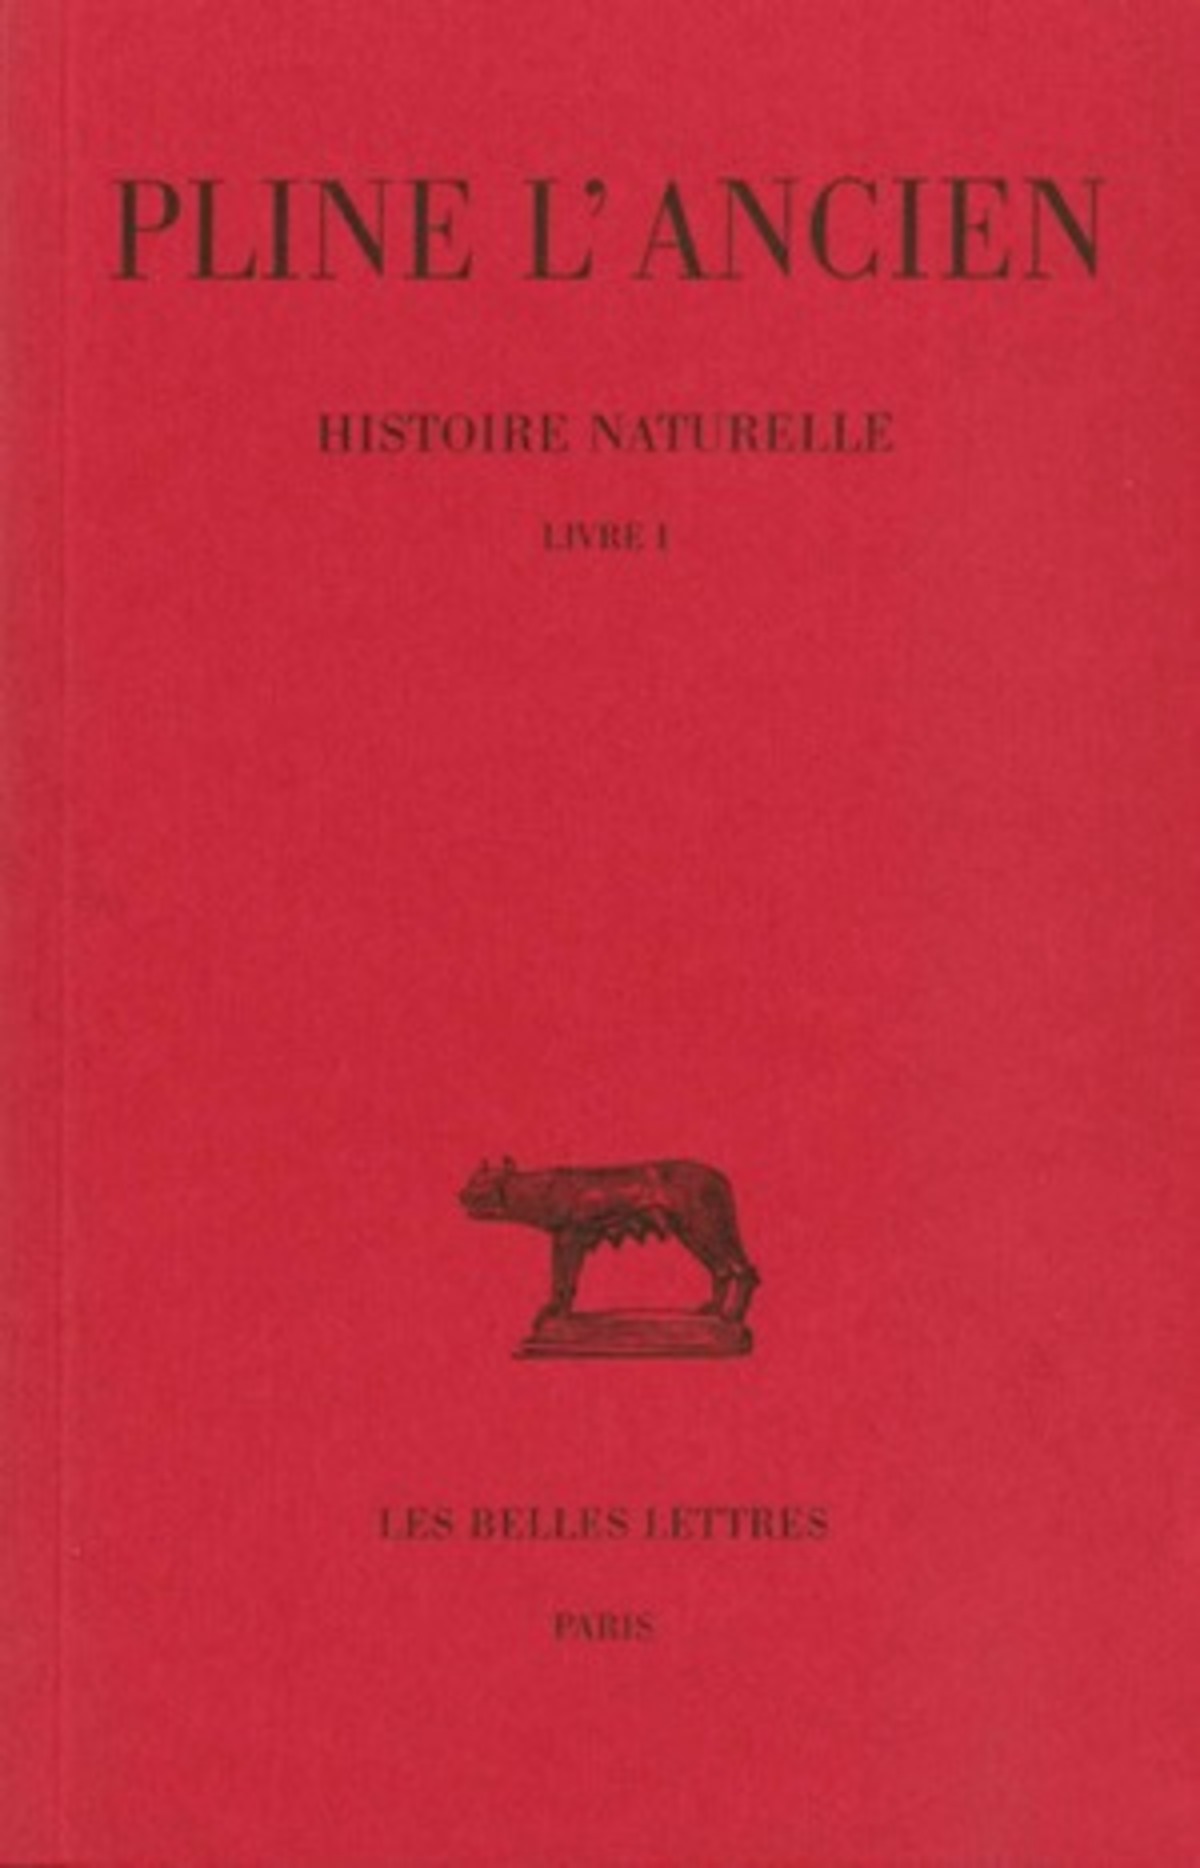 Histoire naturelle. Livre I